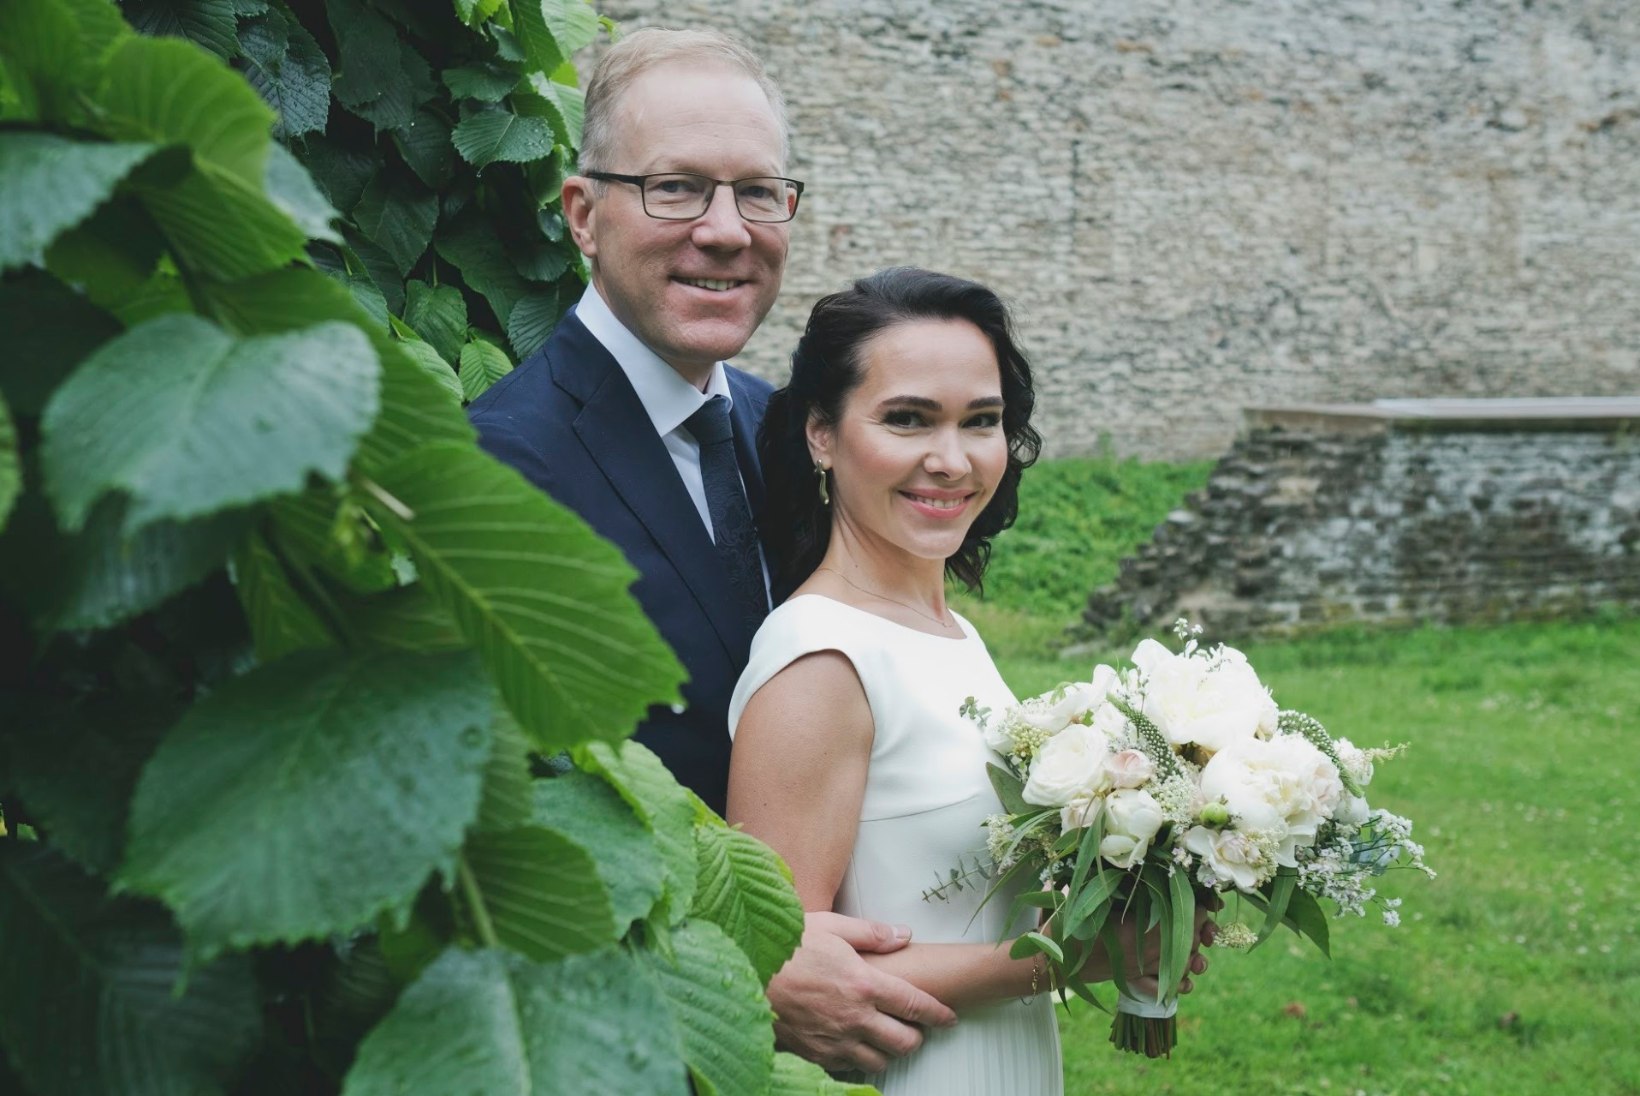 FOTOD | Marko Mihkelson ja Tuuli Semevsky abiellusid: üllatuspidu rabas meid täielikult jalust